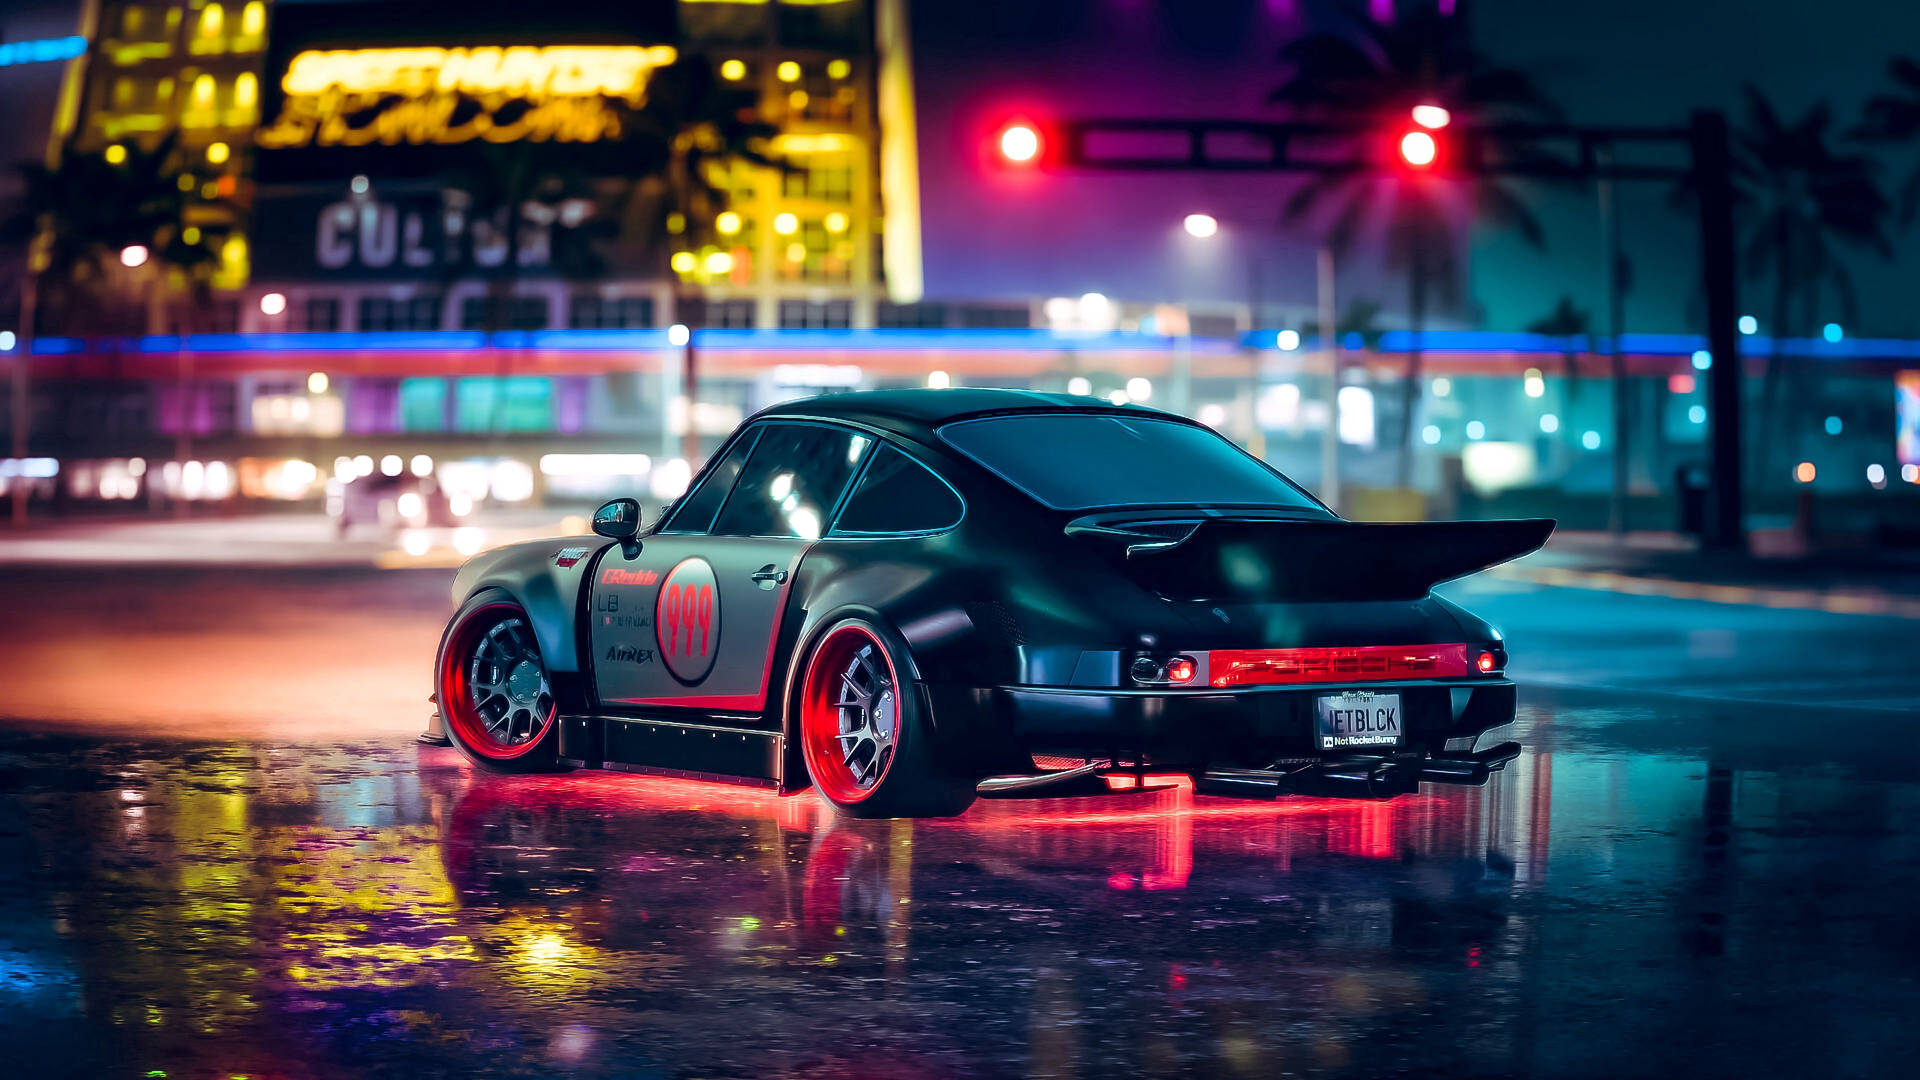 Porsche Neon Car